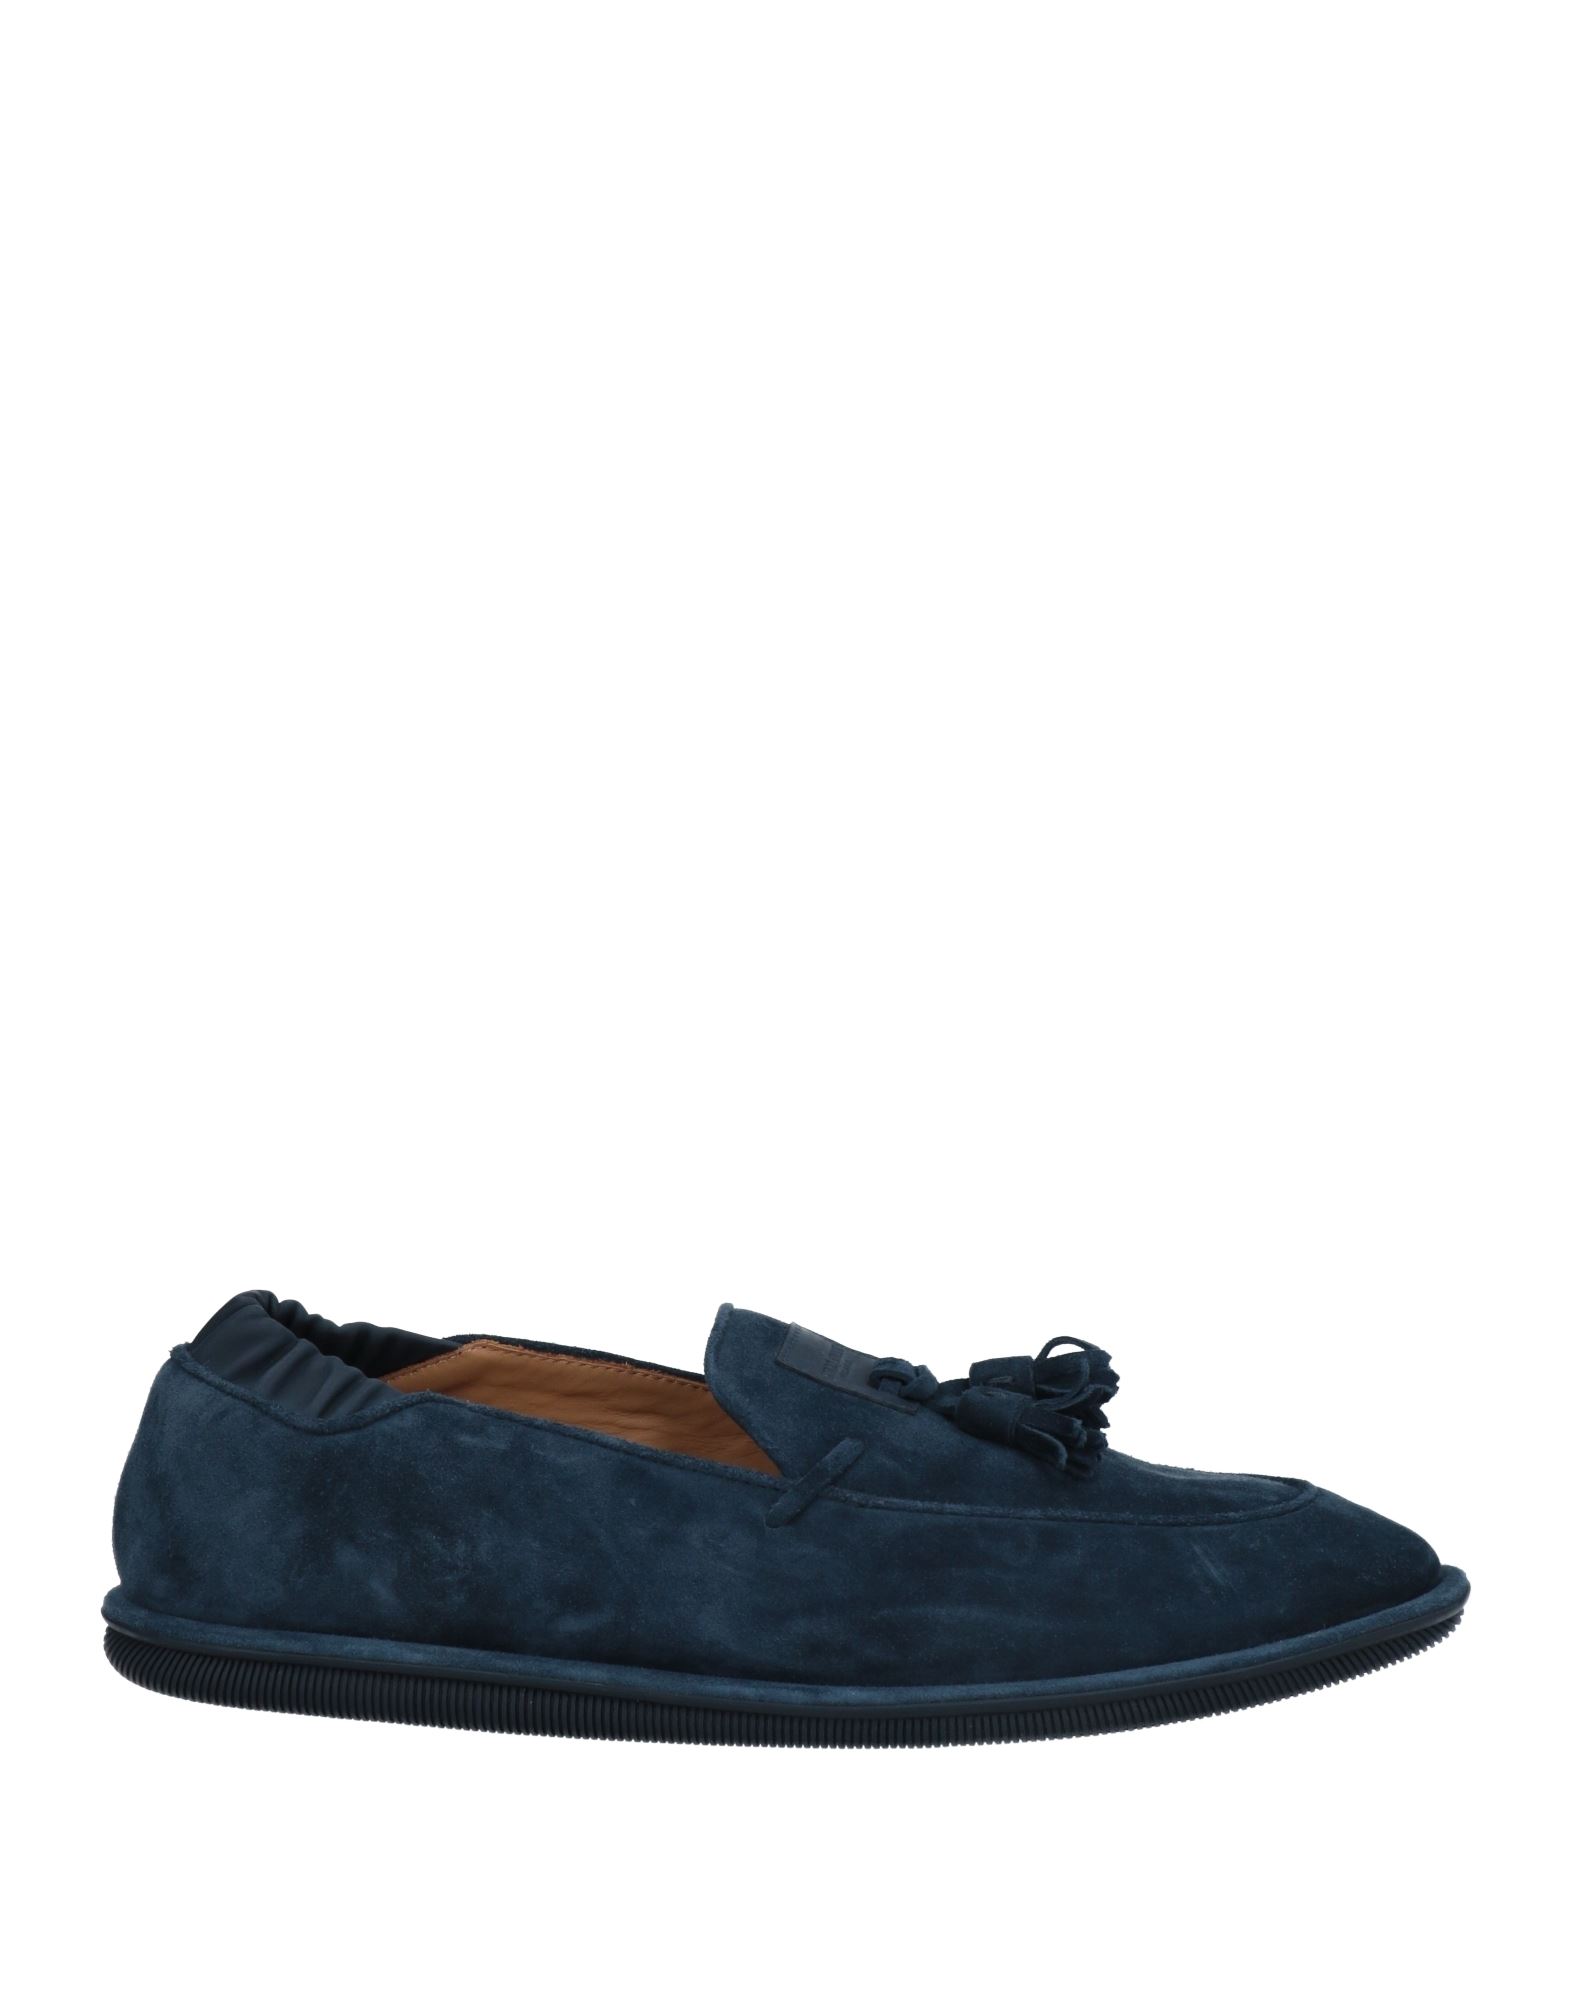 Giorgio Armani Loafers In Dark Blue